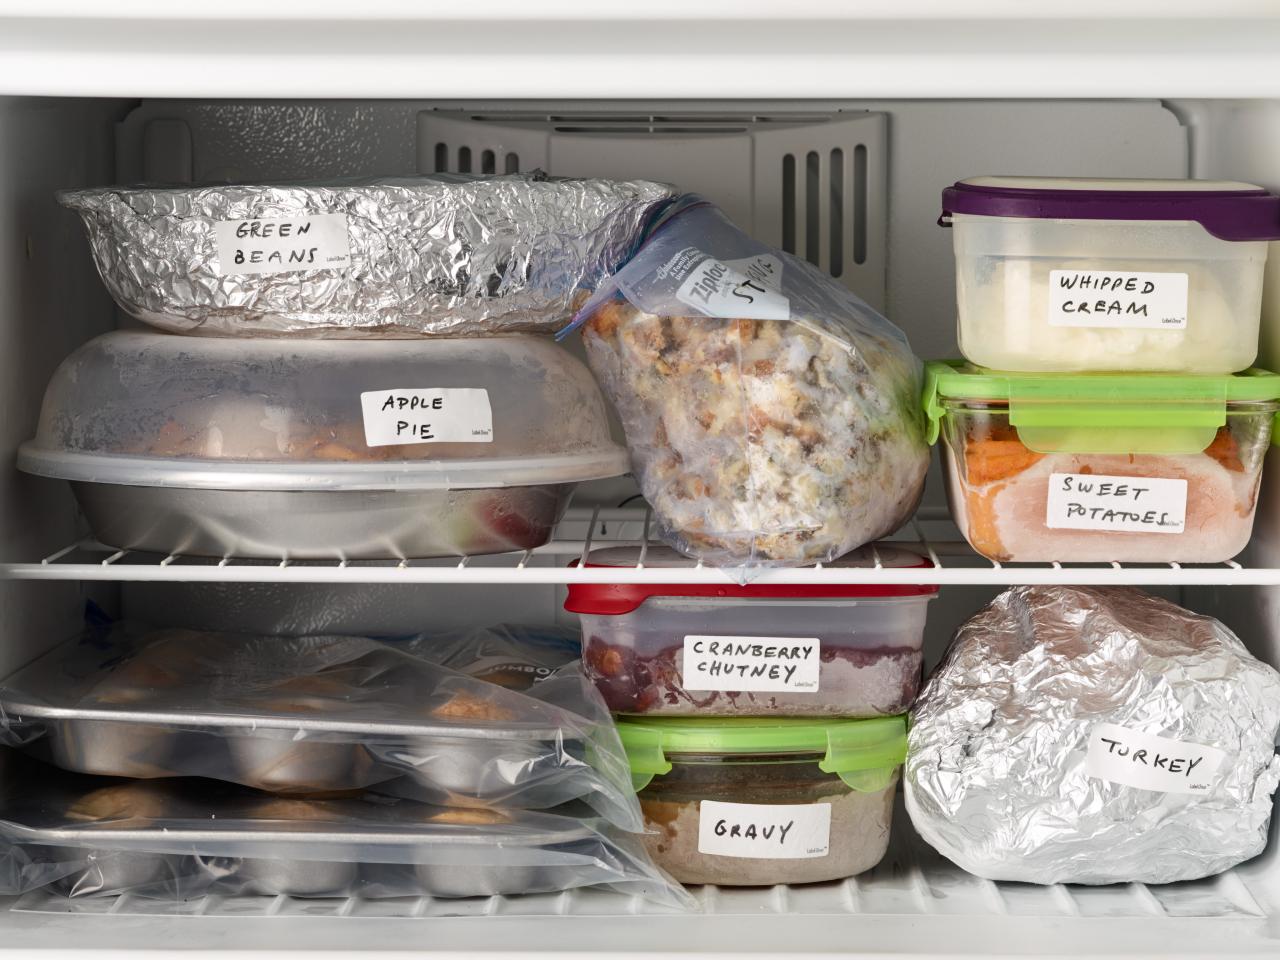 Freezer-to-Oven Whole Turkey · Faith Middleton's Food Schmooze